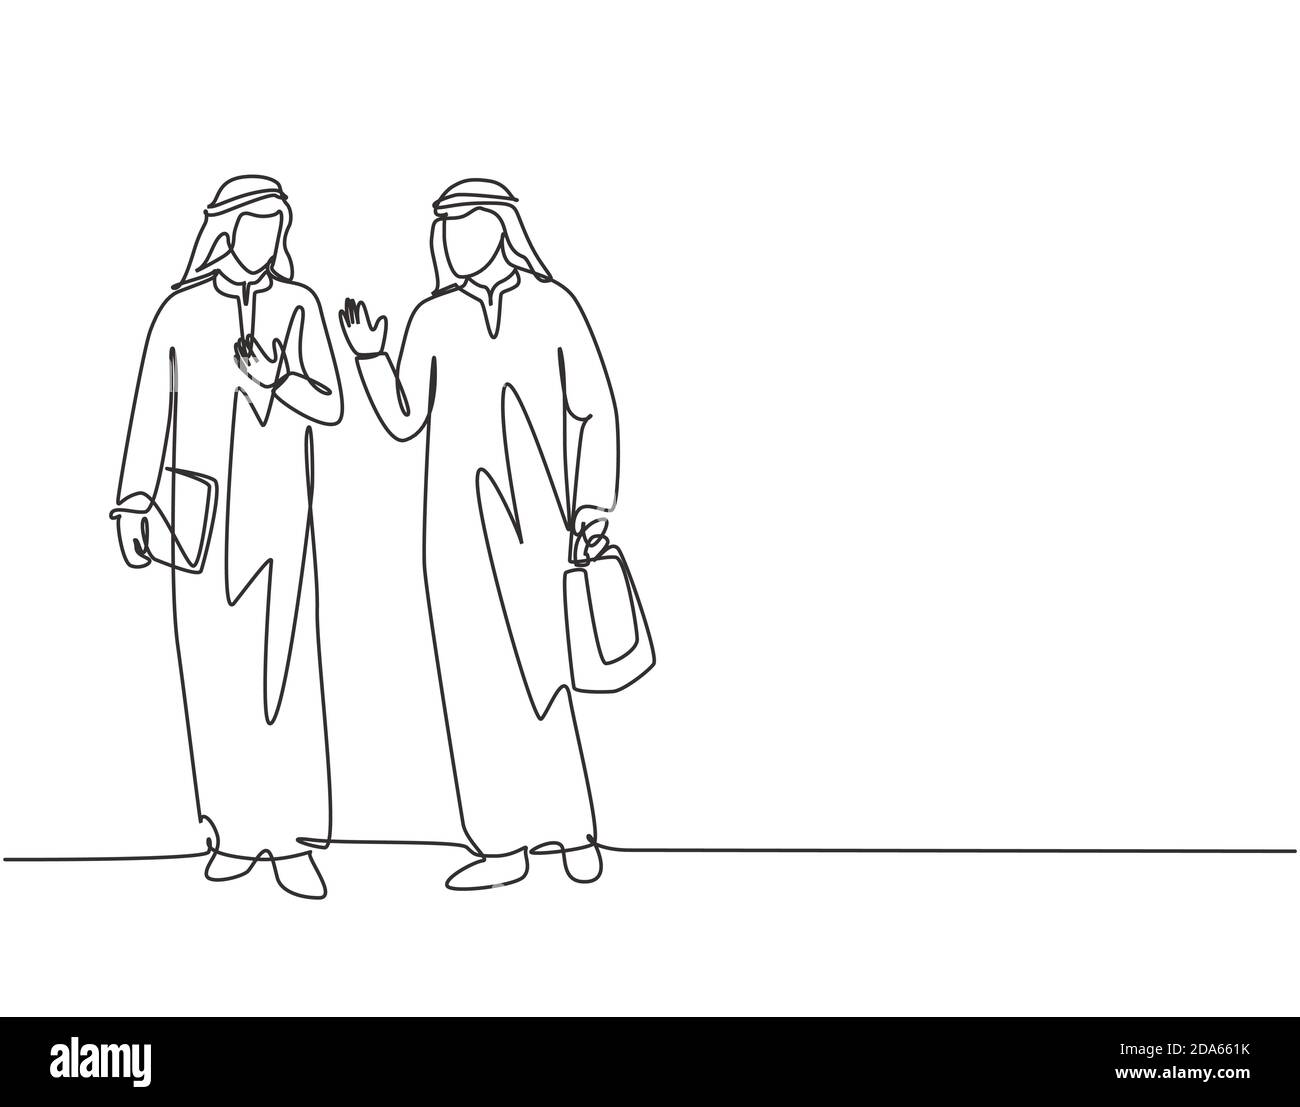 Einzelne kontinuierliche Linie Zeichnung von jungen muslimischen Geschäftsleuten zu Fuß zusammen, während nach Hause nach der Arbeit Stunden. Arabischer naher Osten Tuch Kandura, taub Stock Vektor